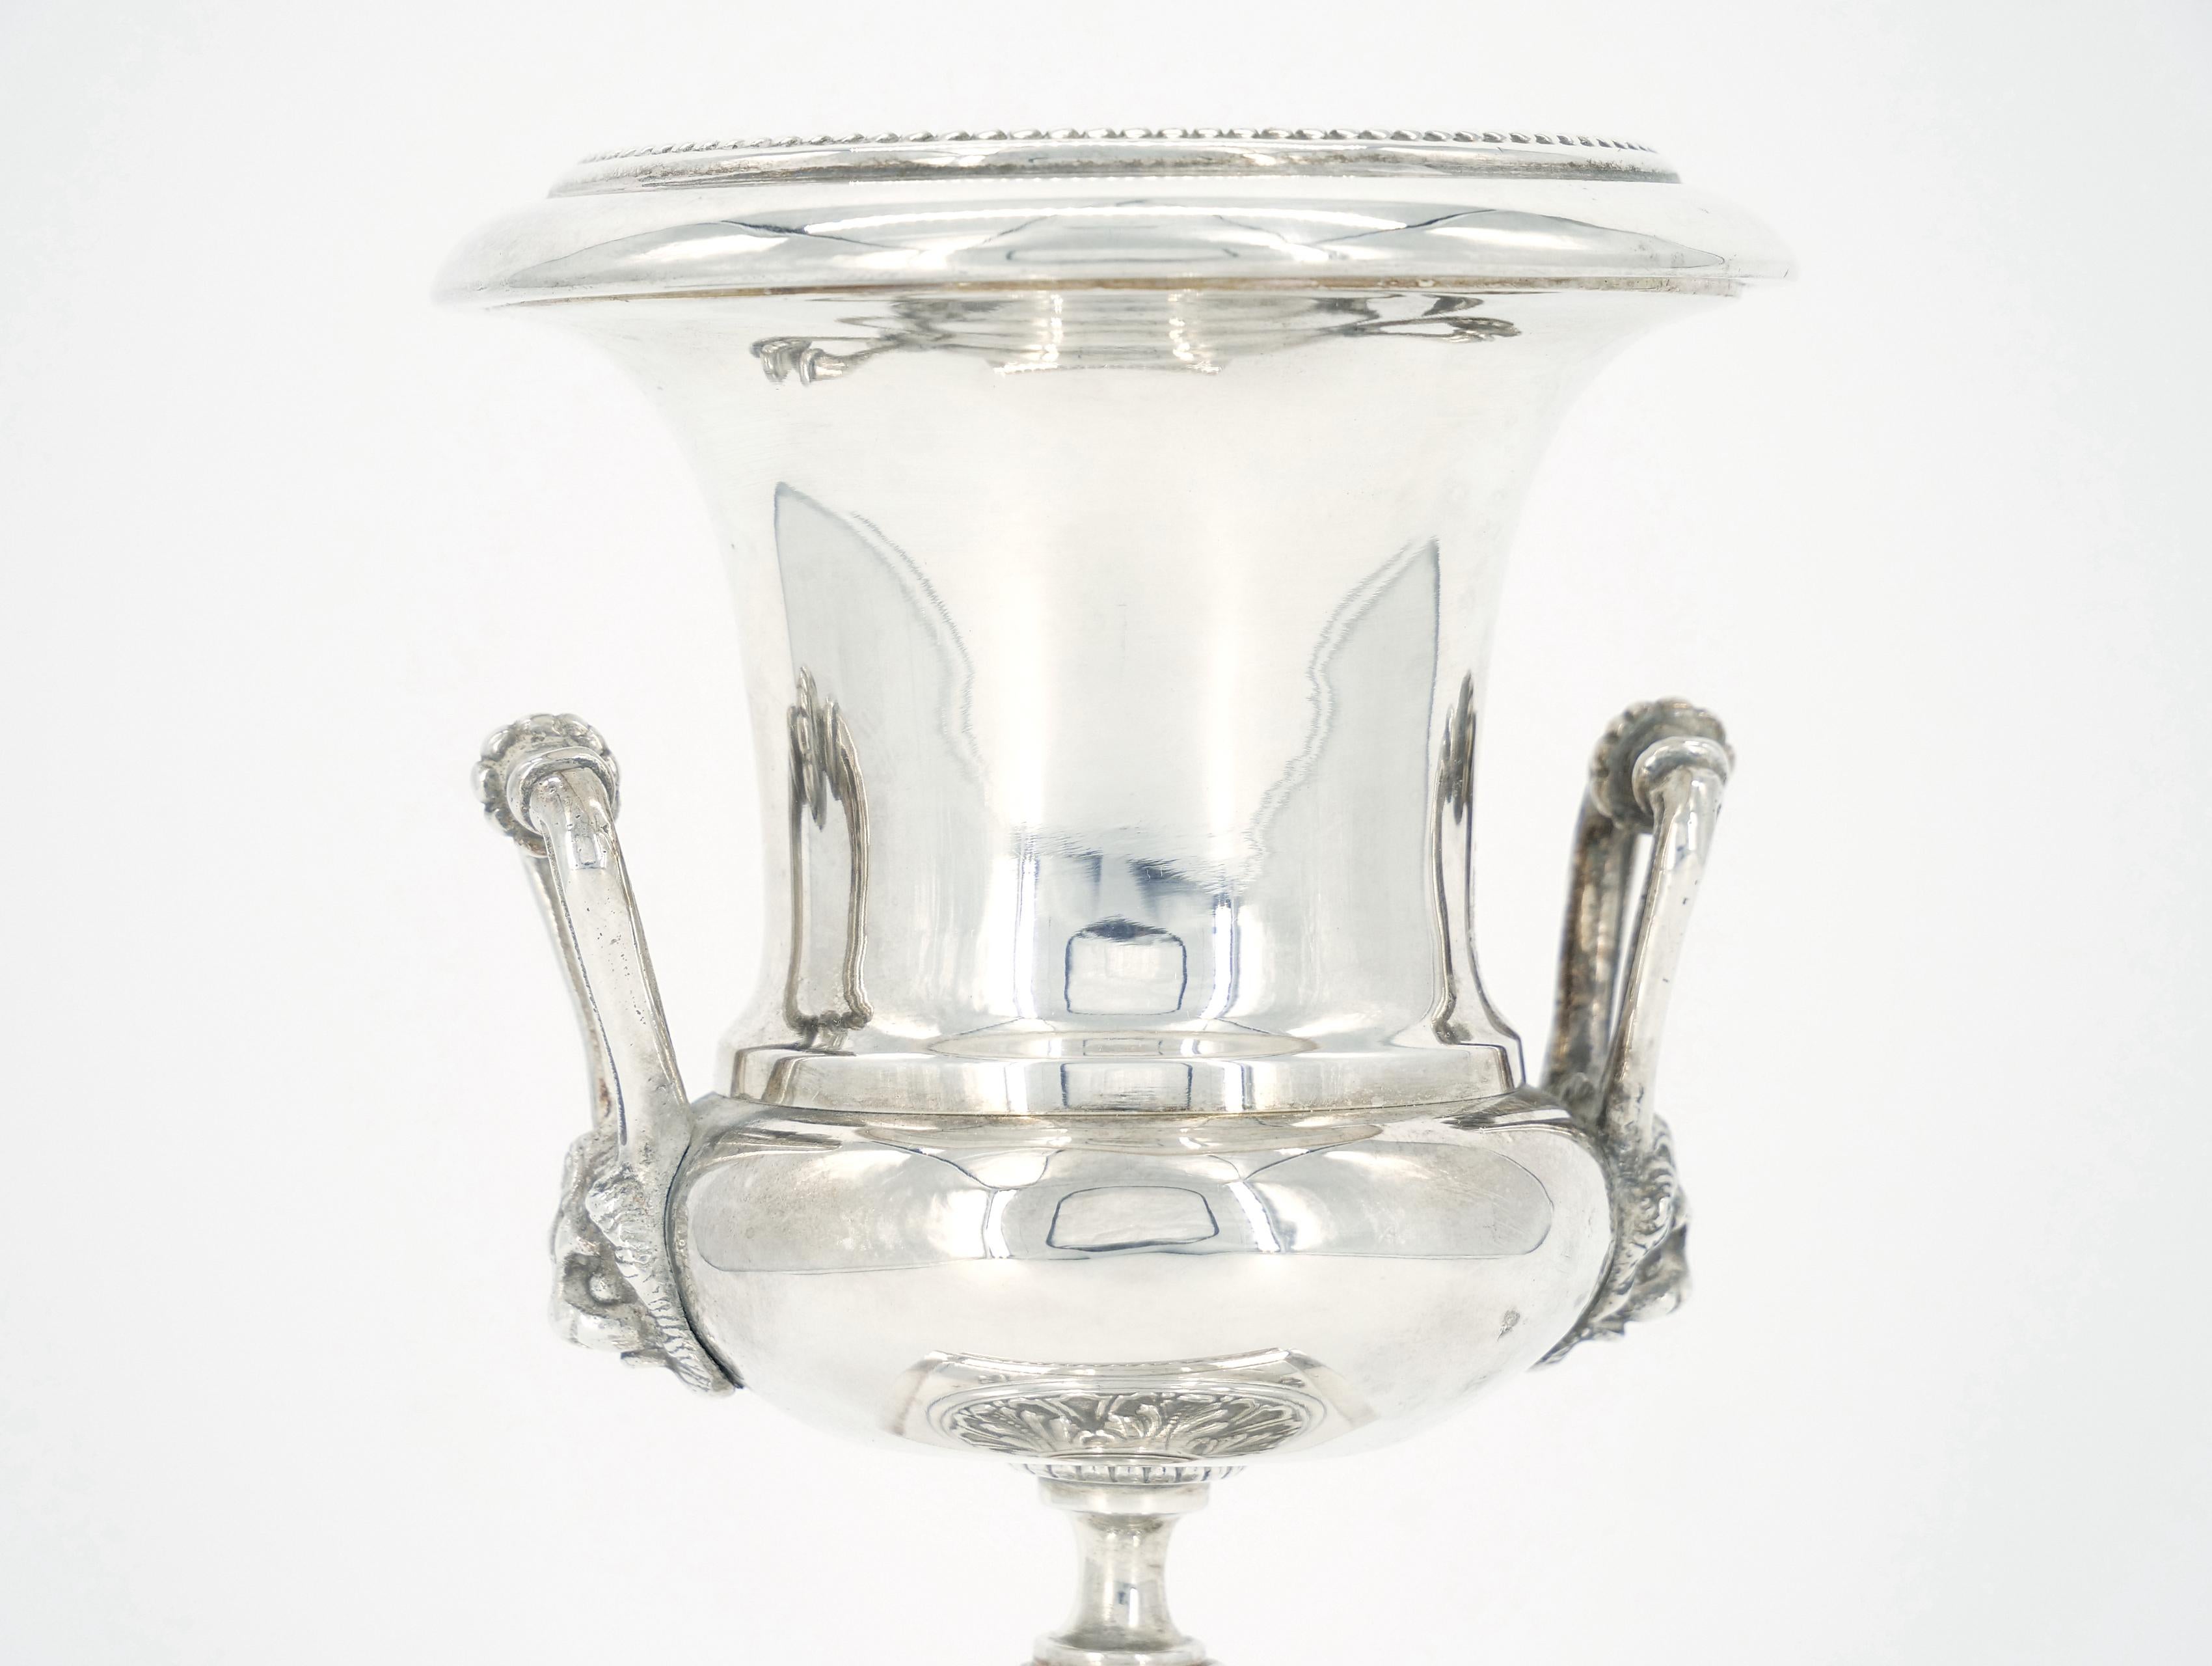 
Entdecken Sie den exquisiten Charme unserer kleinen versilberten Old English Sheffield Deko-Urne / Vase mit seitlichem Löwenkopfgriff. Dieses zeitlose Möbelstück mit seinen aufwändigen Details und dem quadratischen Sockel ist eine perfekte